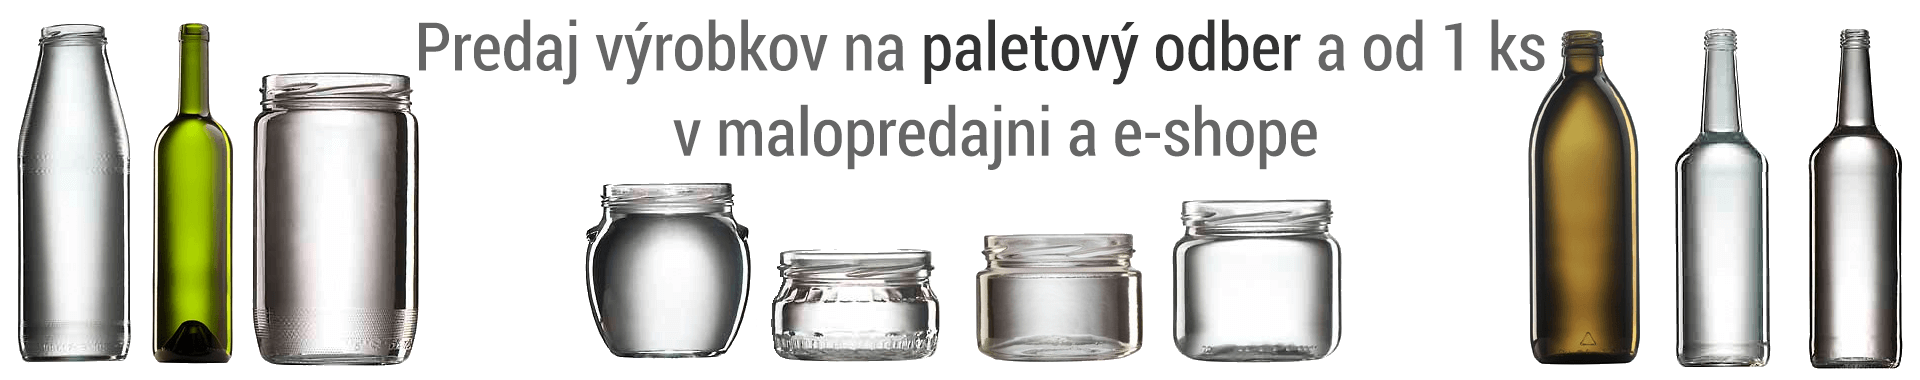 paletový odber produktov javisro.sk